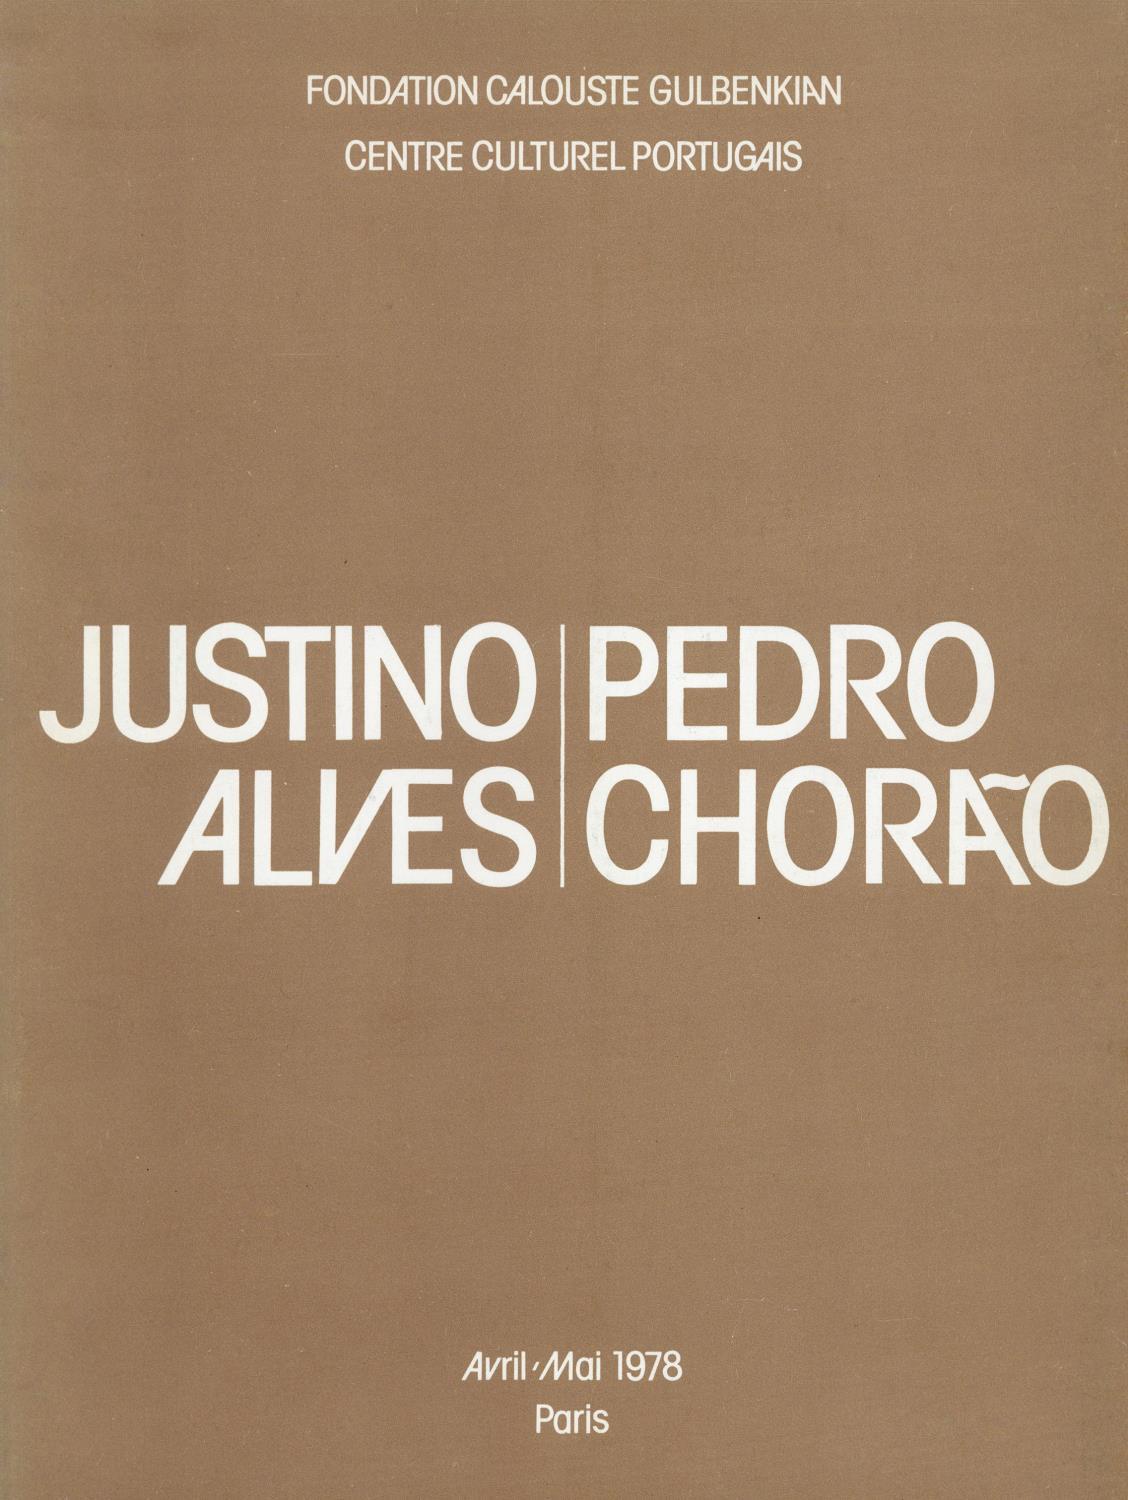 Justino Alves. Pedro Chorão